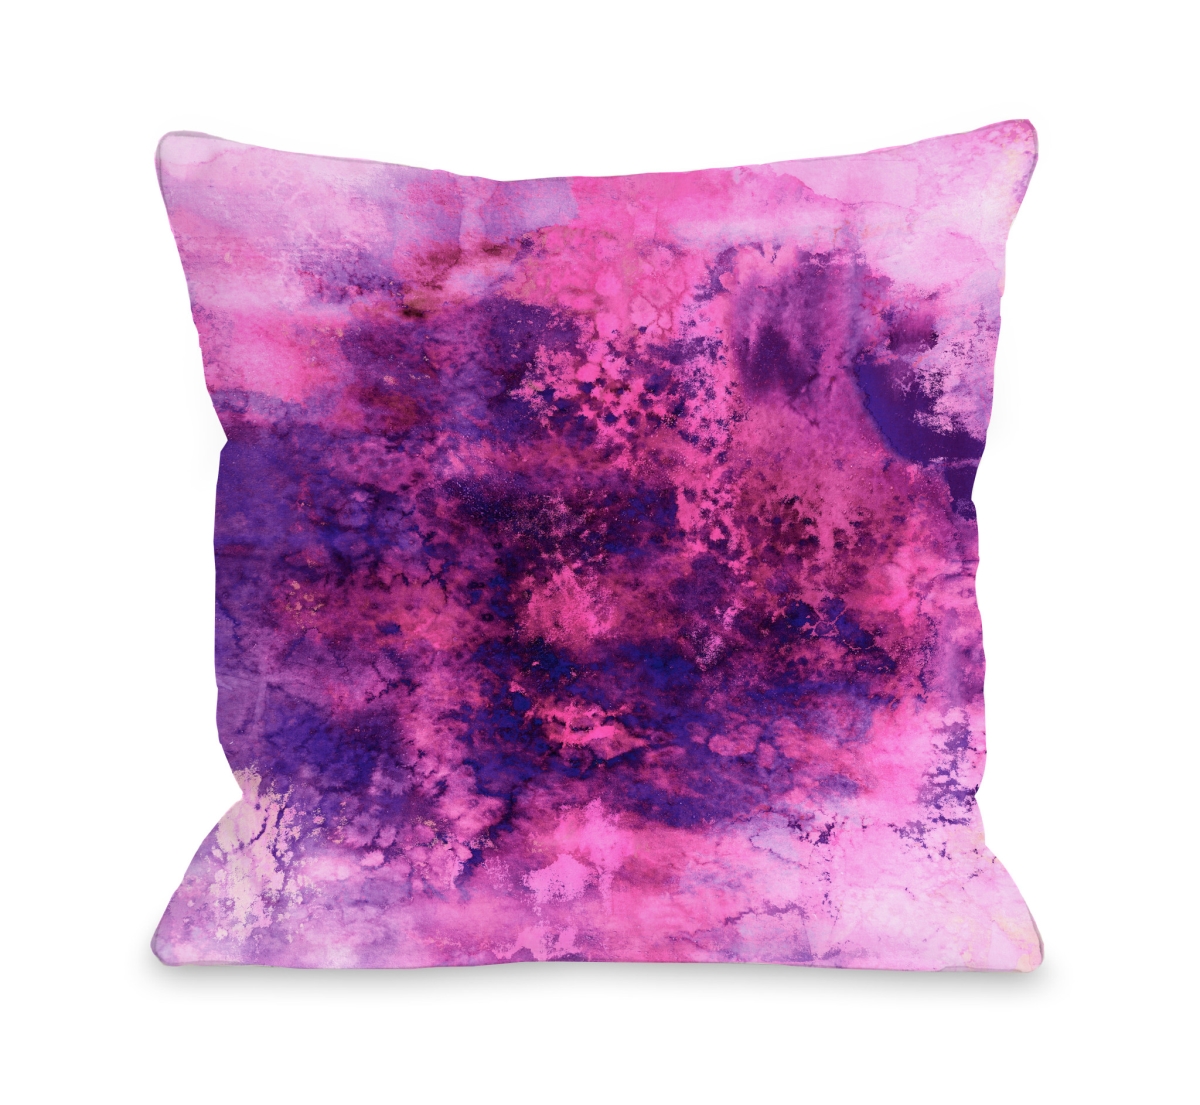 82791pl16 Epoch 5 Pillow By Julia Di Sano, Pink